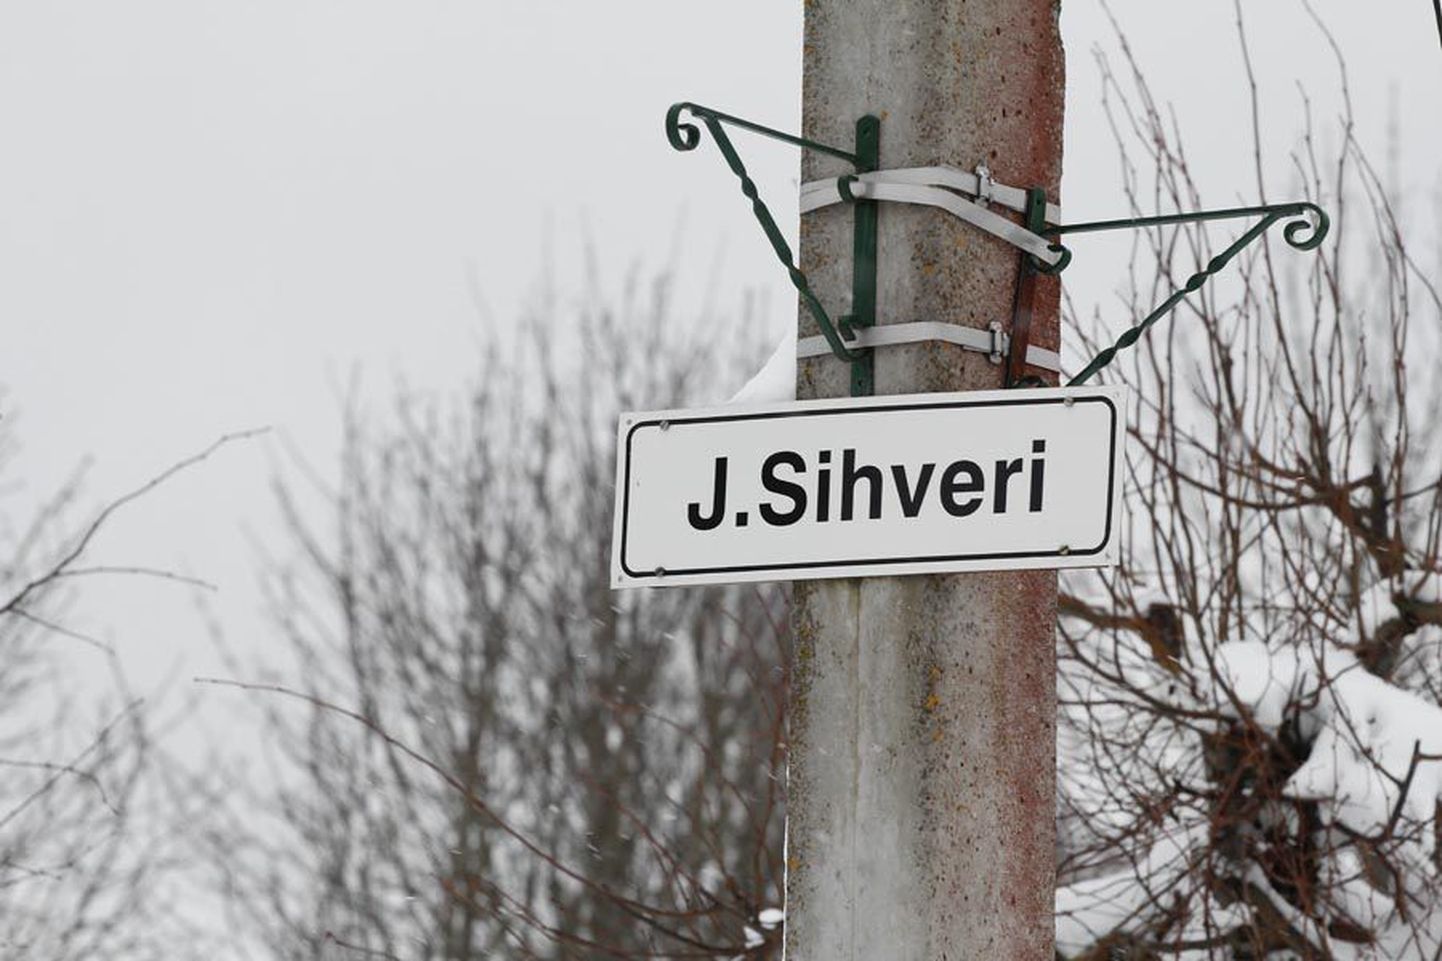 Üks Mõisaküla suuremaid tänavaid kannab endiselt Jaan Sihveri nime, et tuletada meelde tema kogukonda arendavat tegevust.